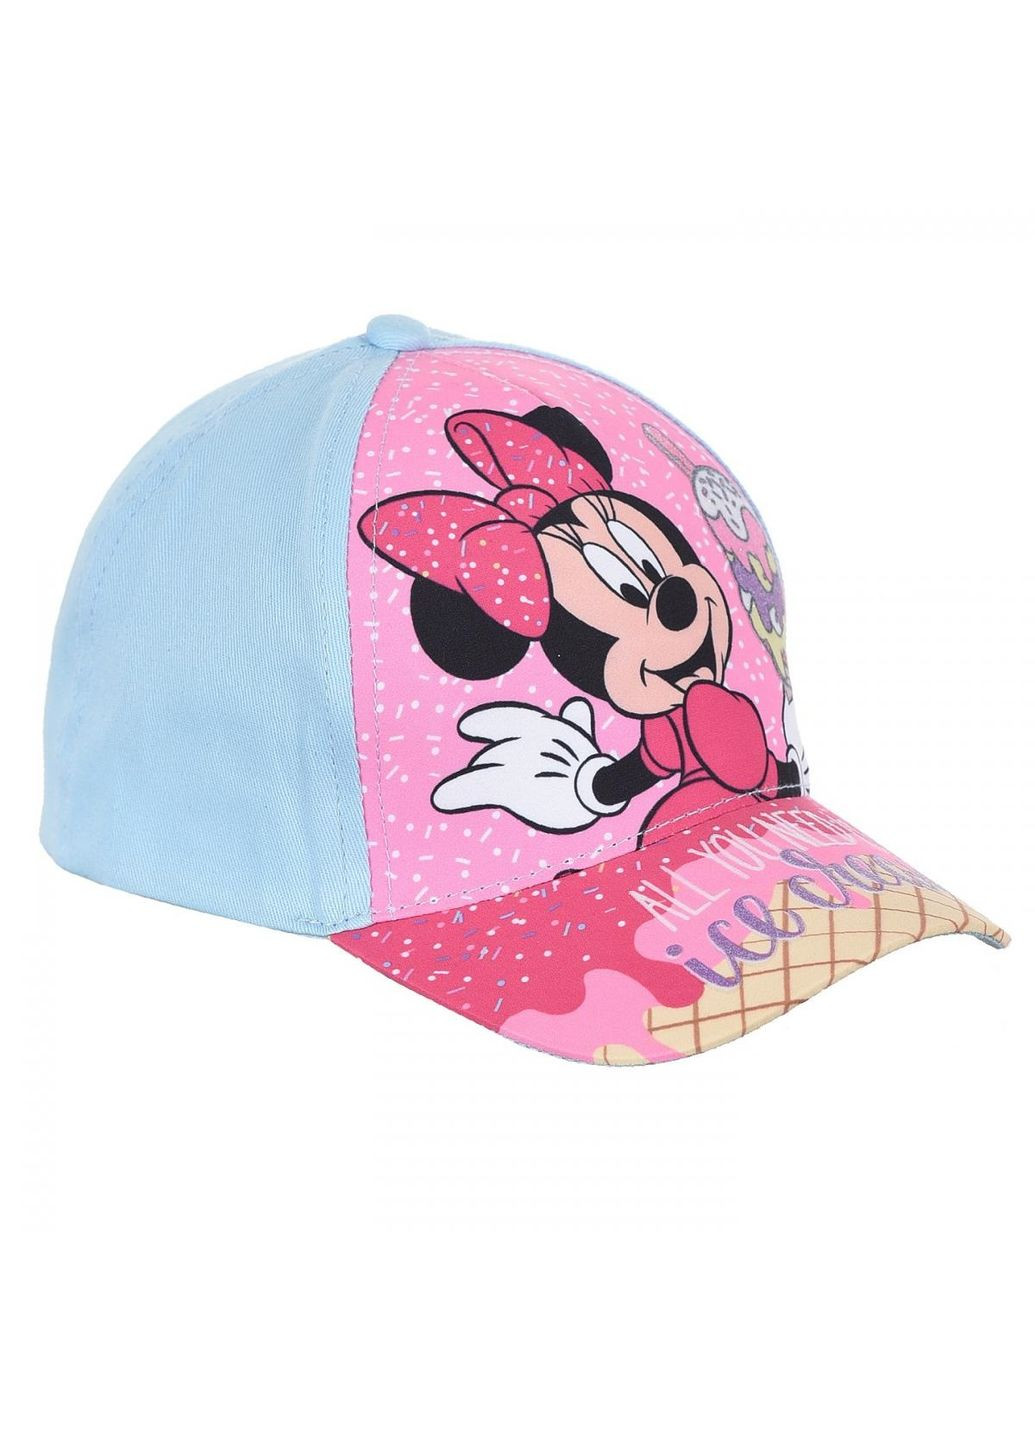 Кепка Minnie Mouse (Минни Маус) UE40201 EU Disney кепка (290252710)